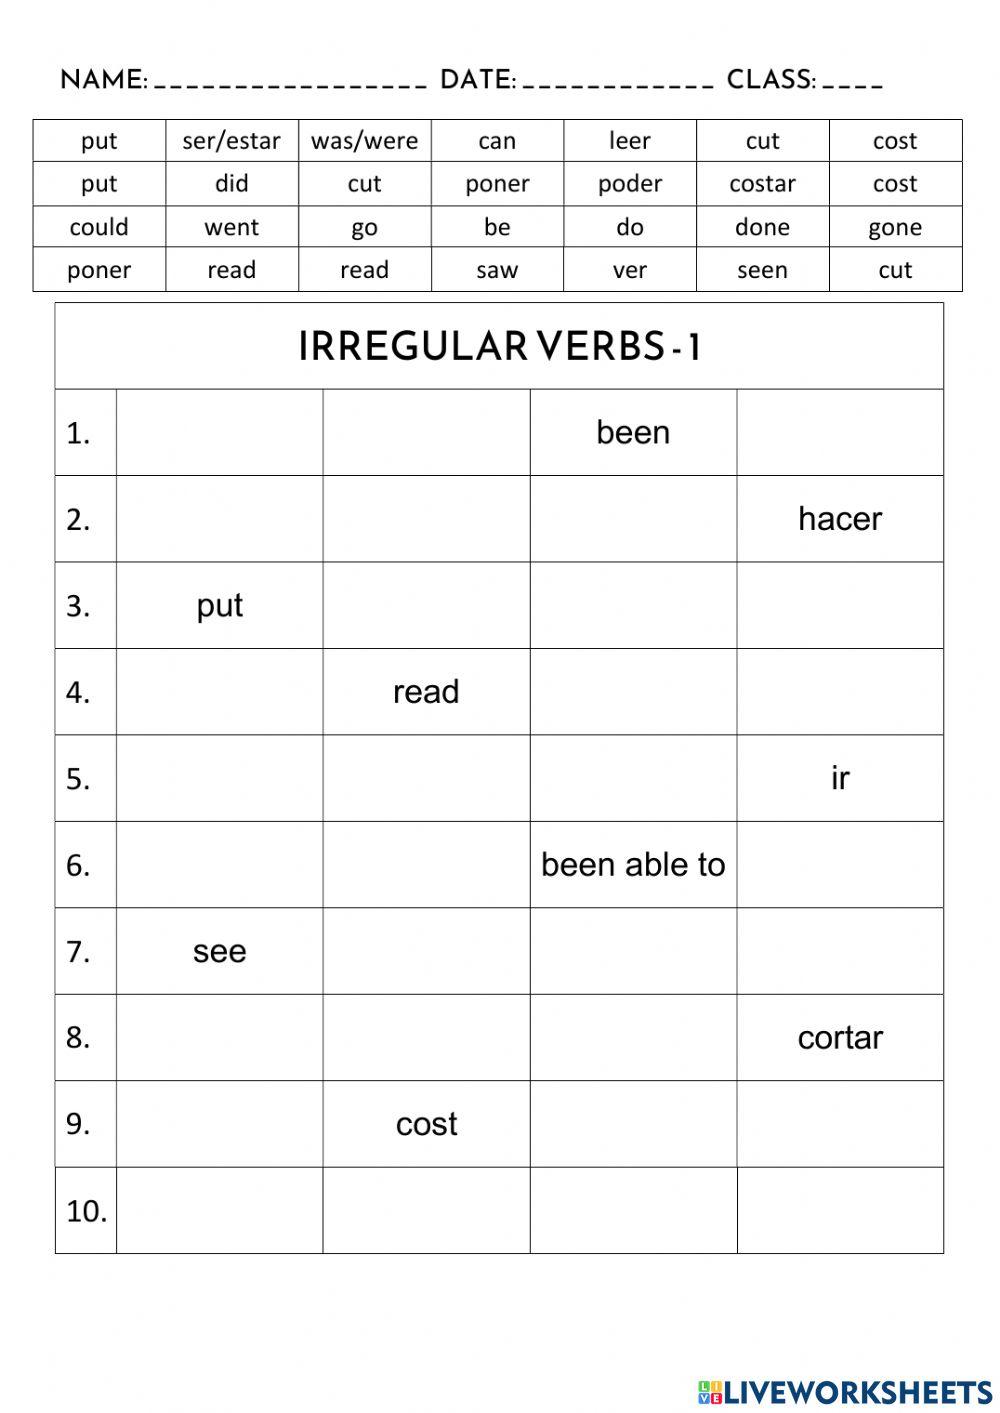 Irregular verbs 1